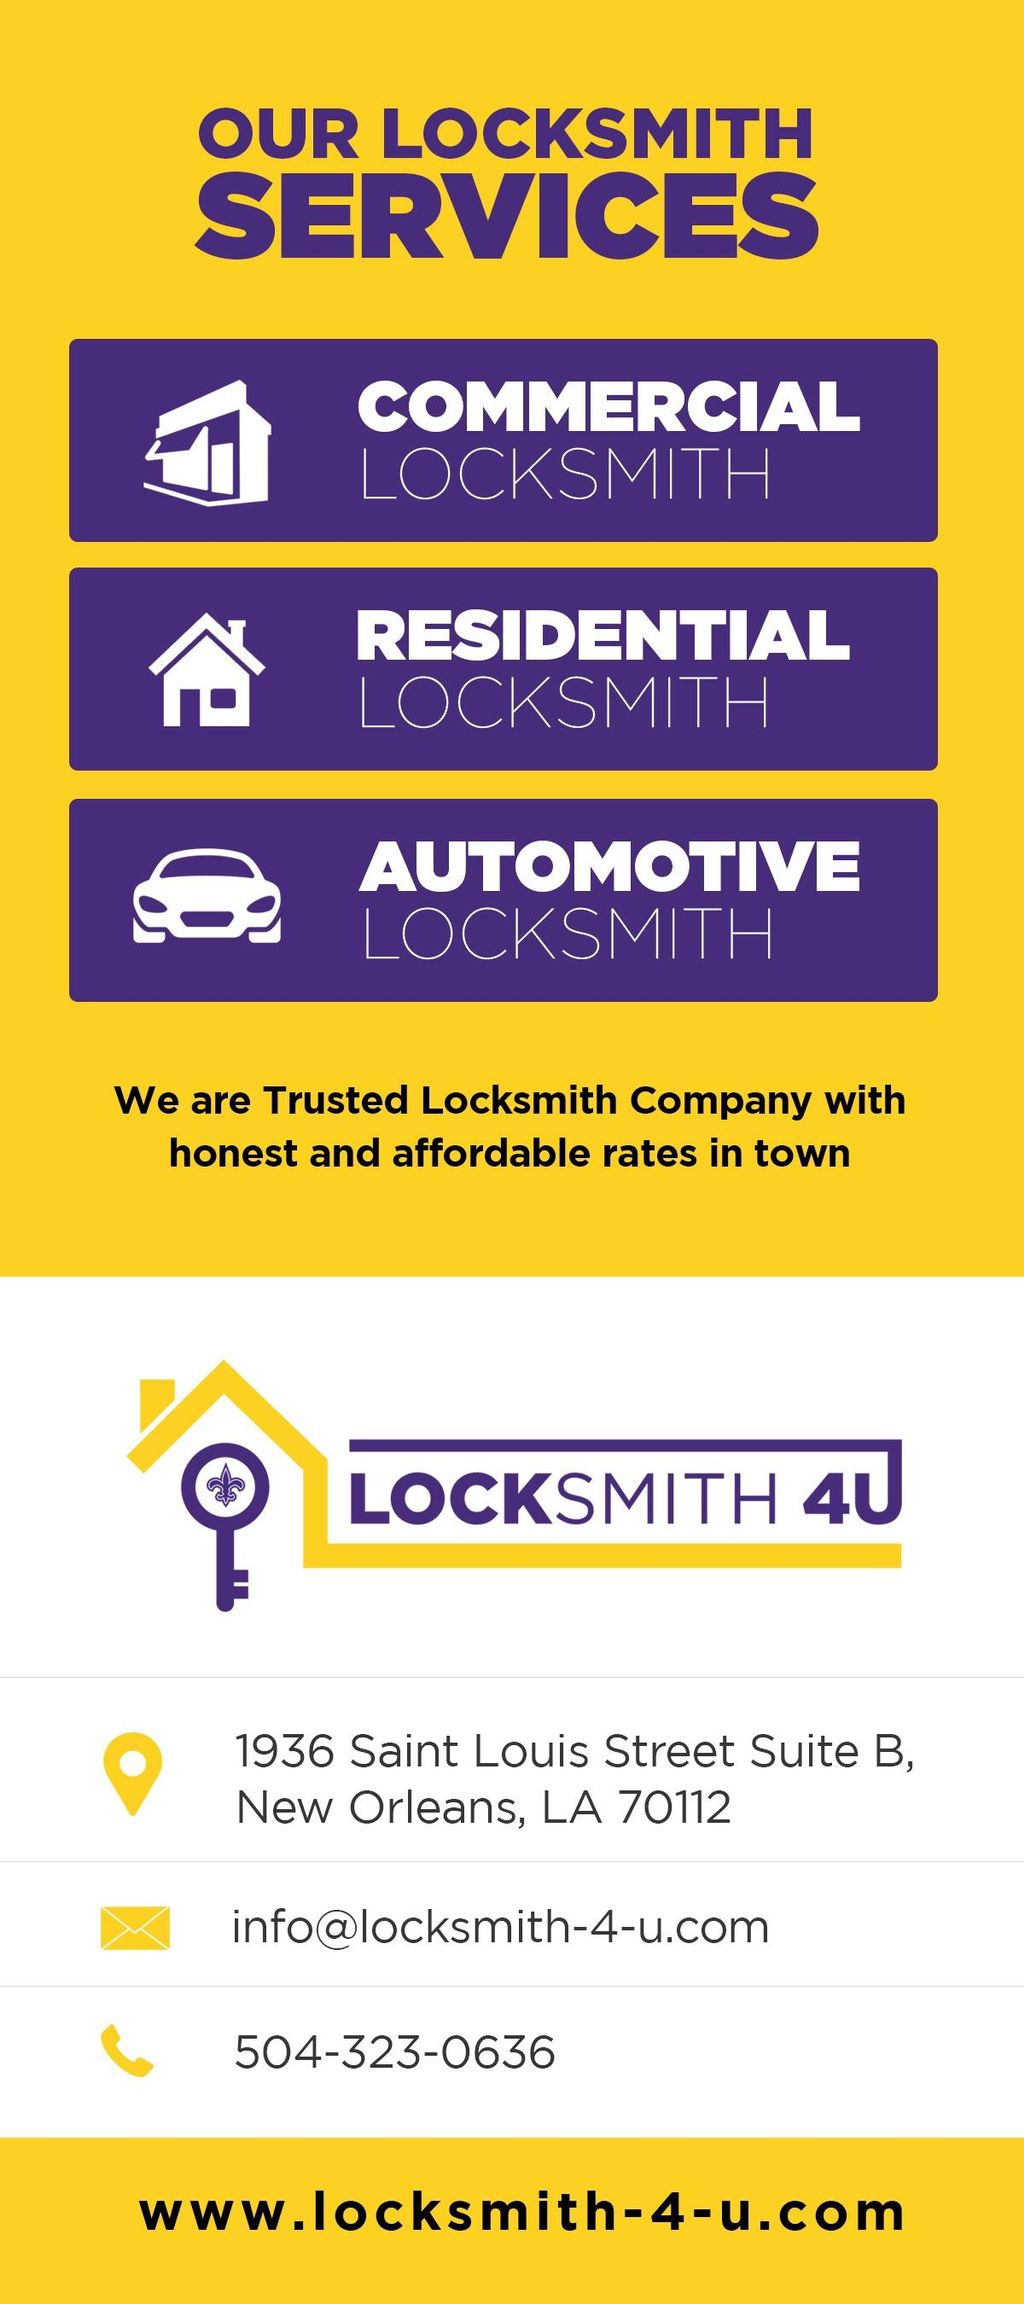 Locksmith-4-U